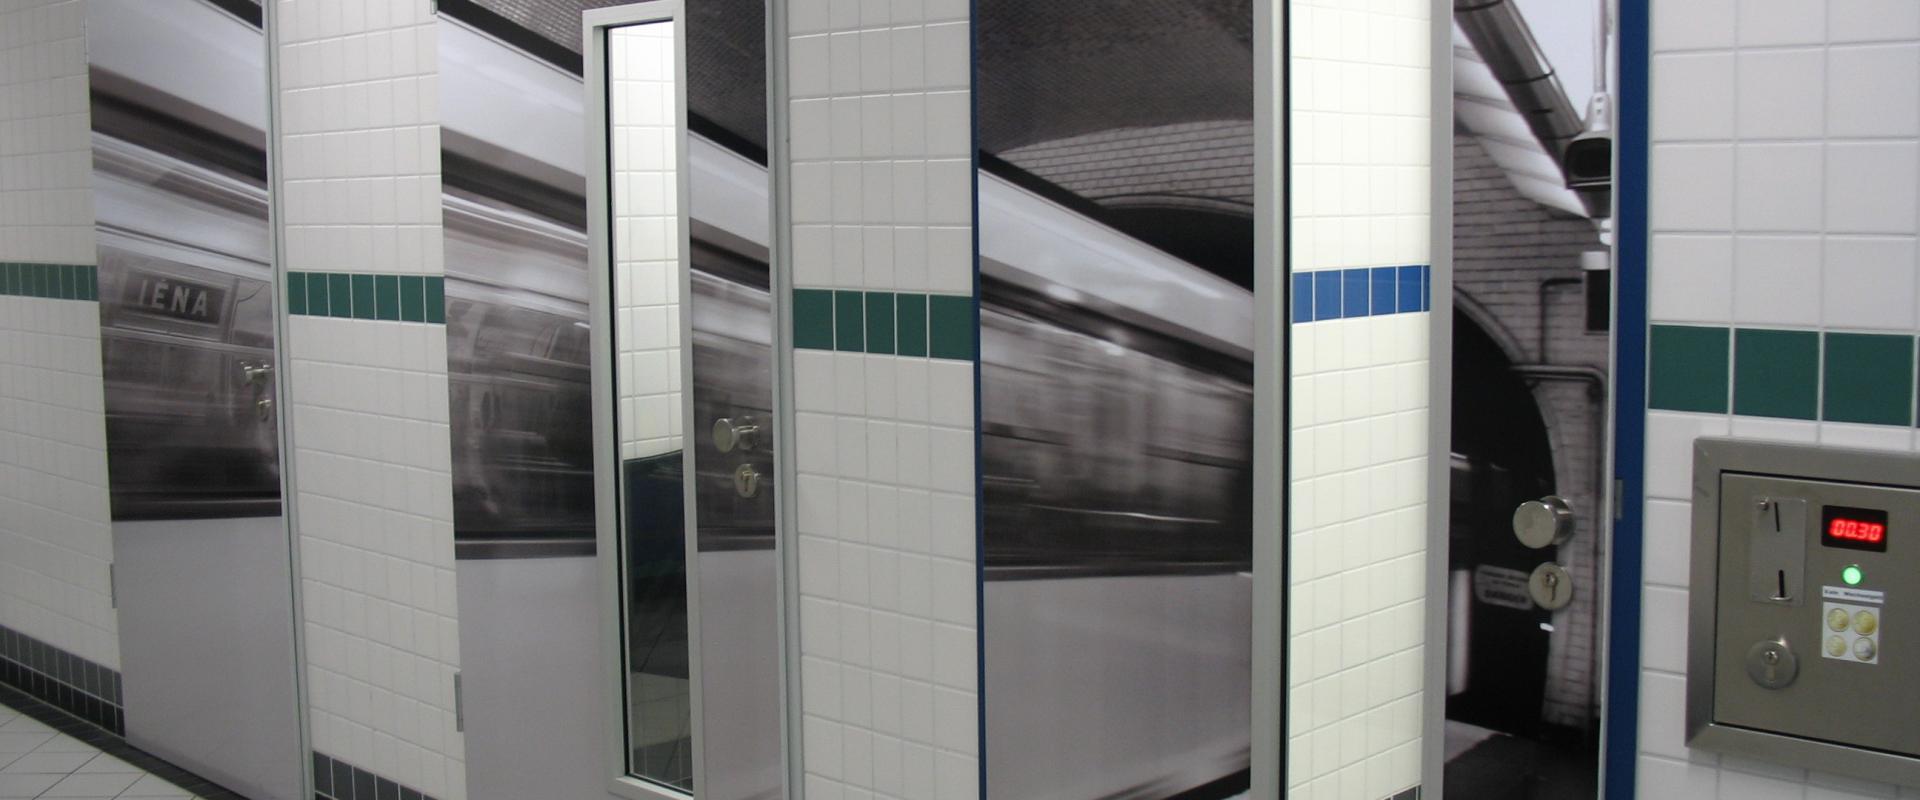 Innenansicht der Toilette am Markt im "U-Bahn-Stil"